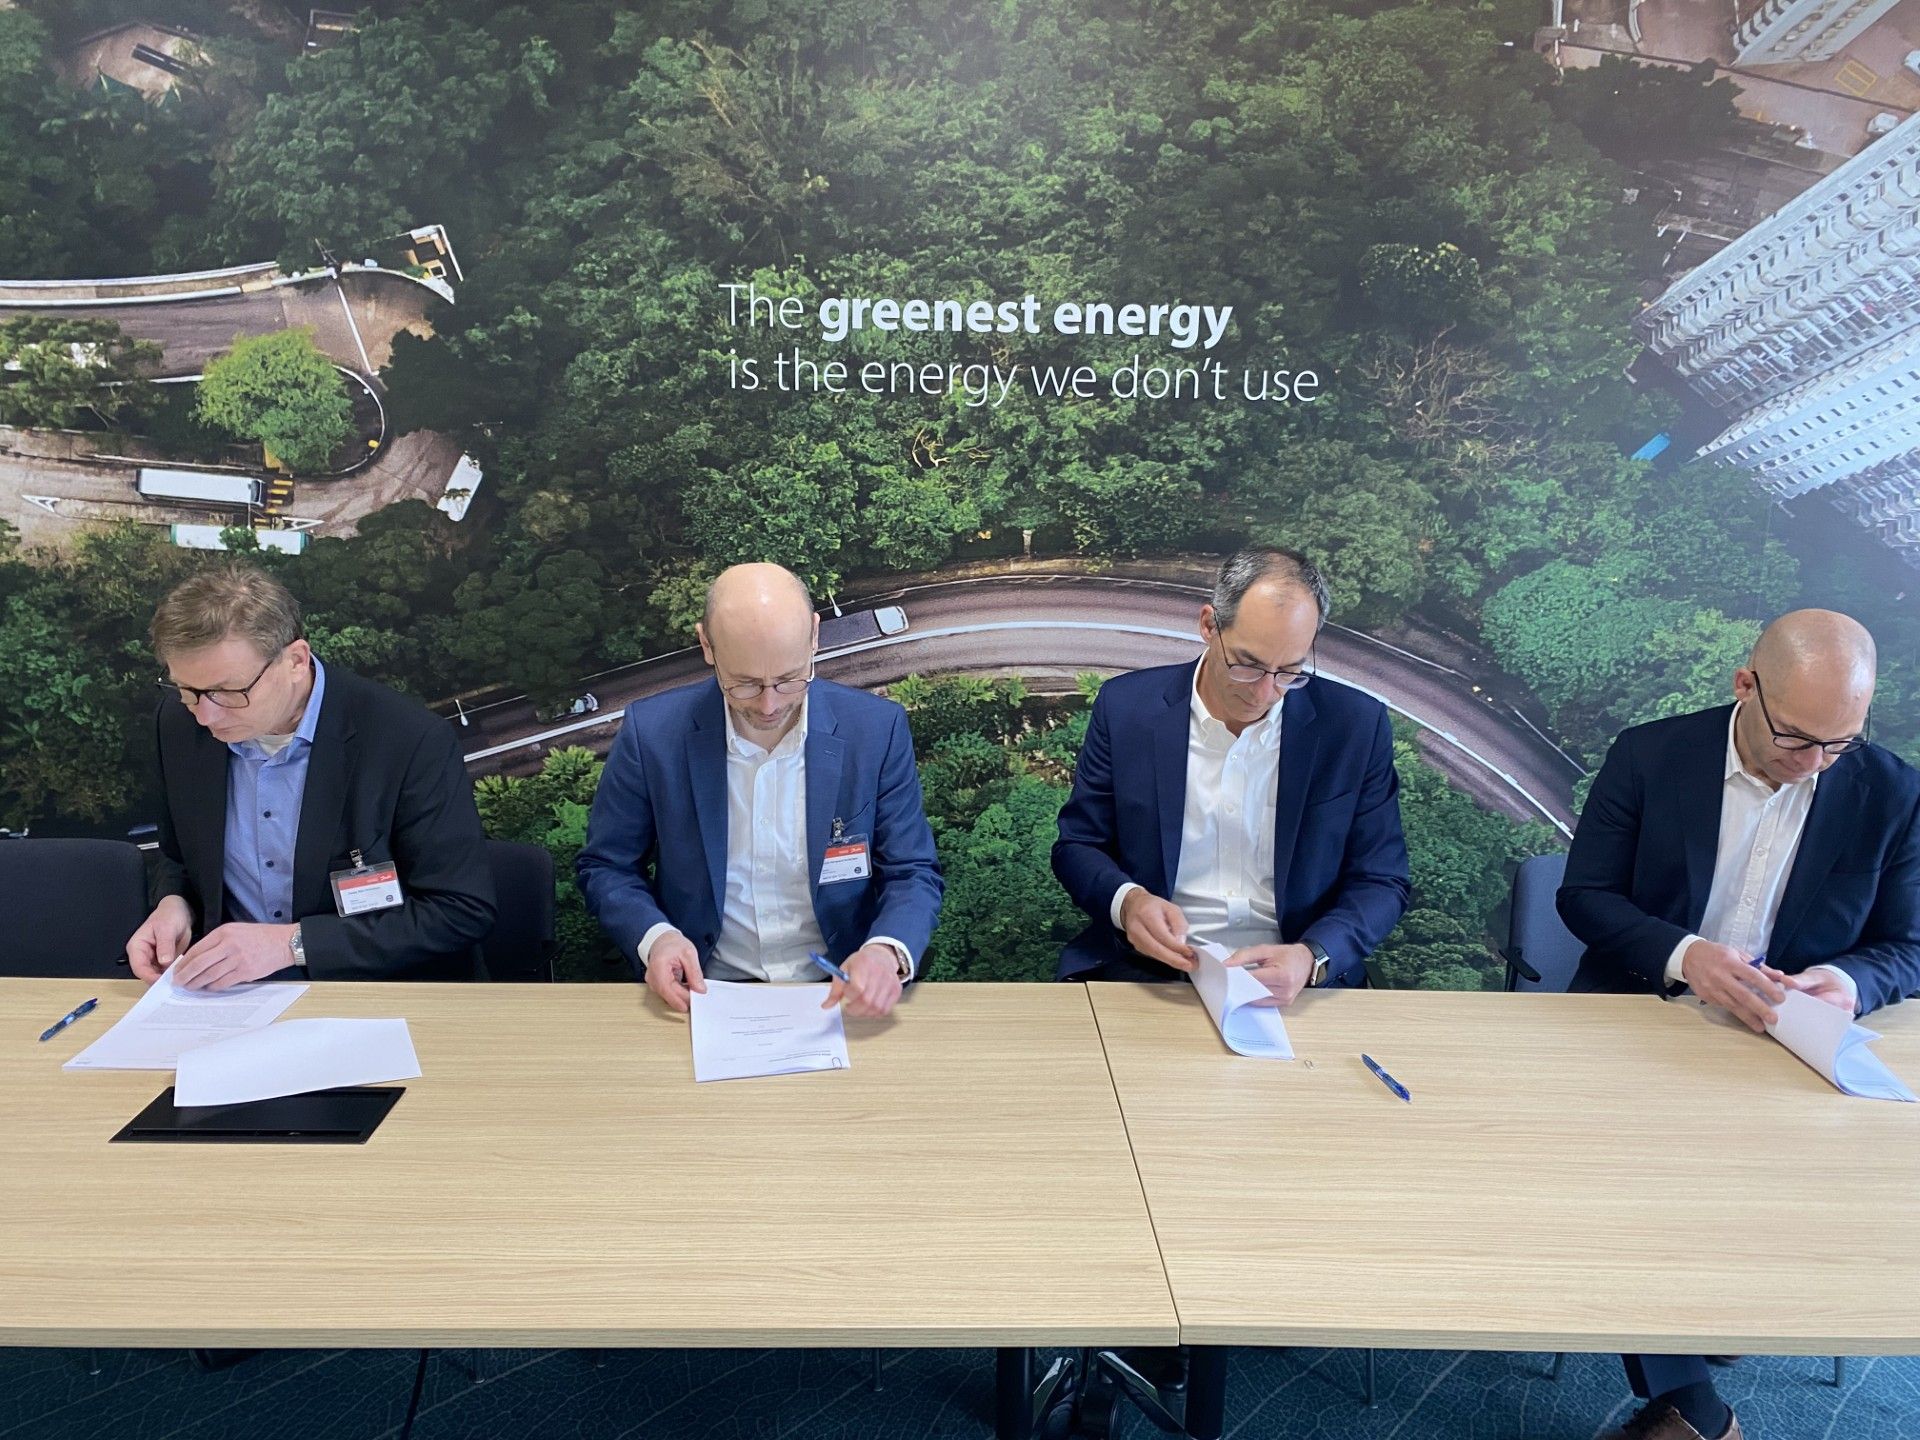 Stiesdal Hydrogen y Danfoss firman acuerdo comercial sobre producción de electrolizador de hidrógeno